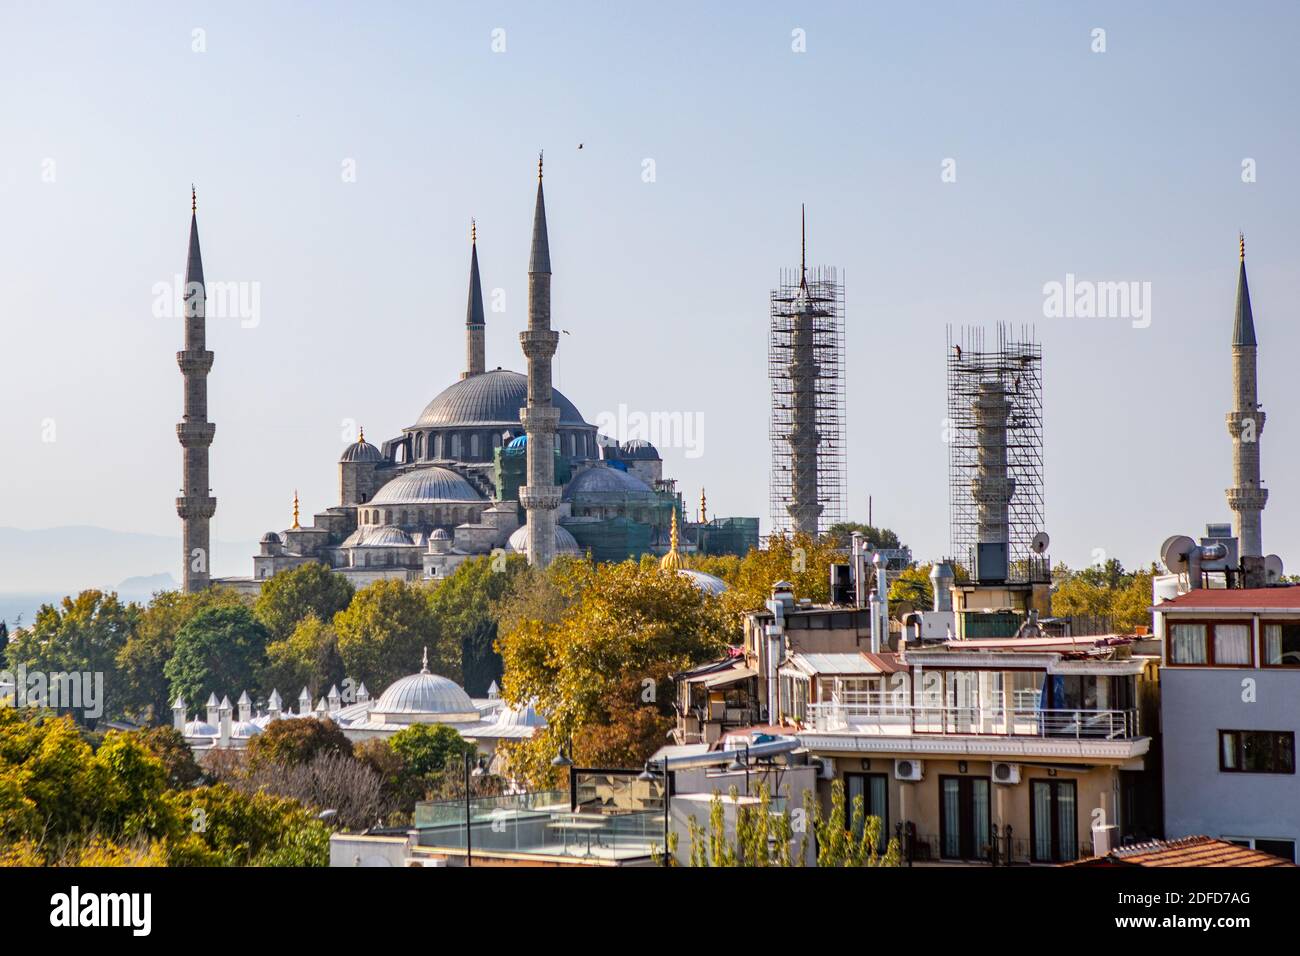 La Mezquita Azul o Sultanahmet Camii es la mezquita más grande En Estambul y es una gran atracción turística Foto de stock